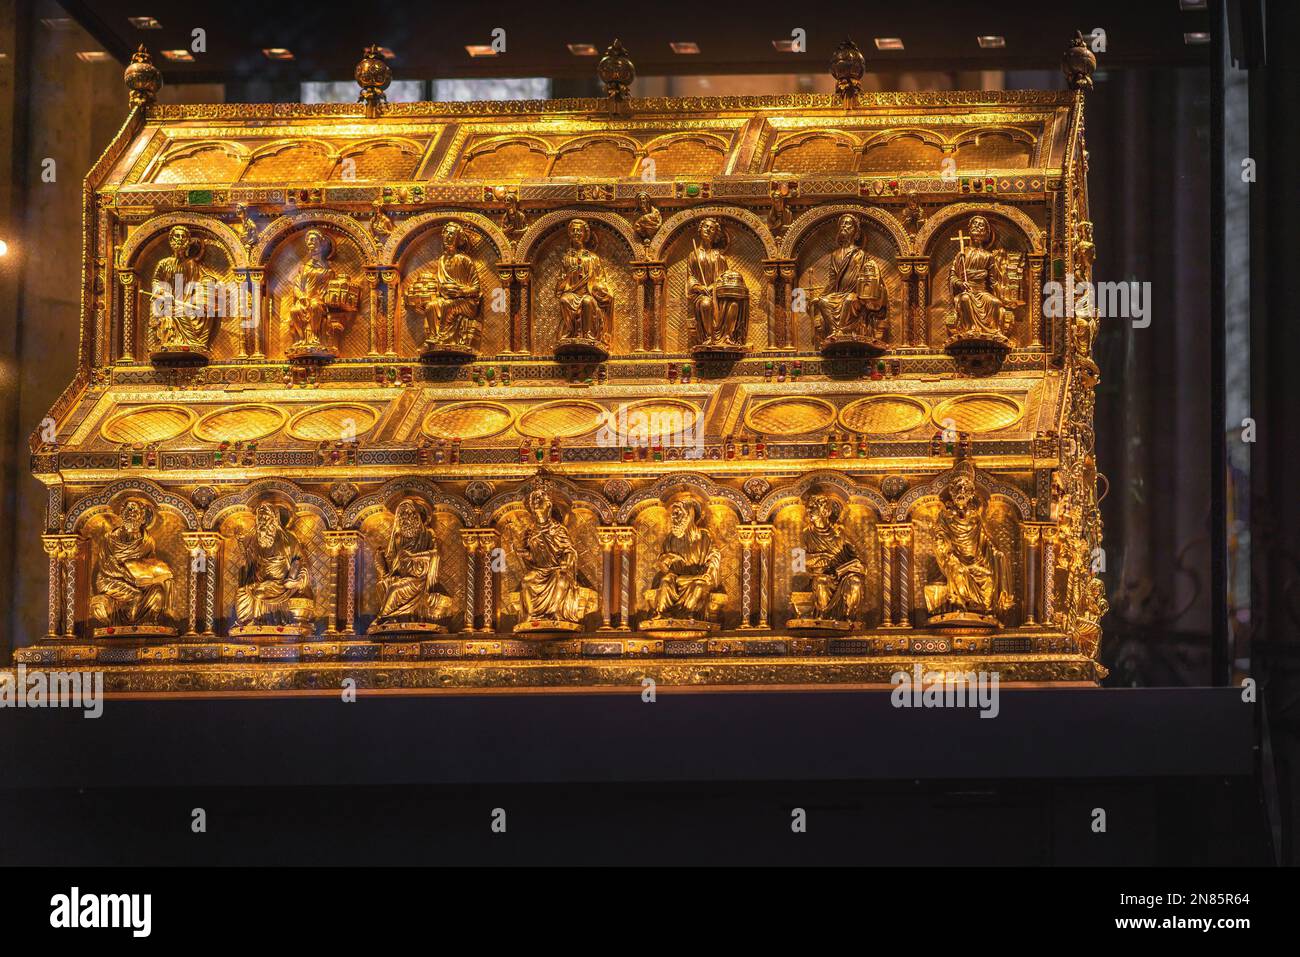 El Santuario de los Reyes Magos en el Interior de la Catedral de Colonia - Colonia, Alemania Foto de stock